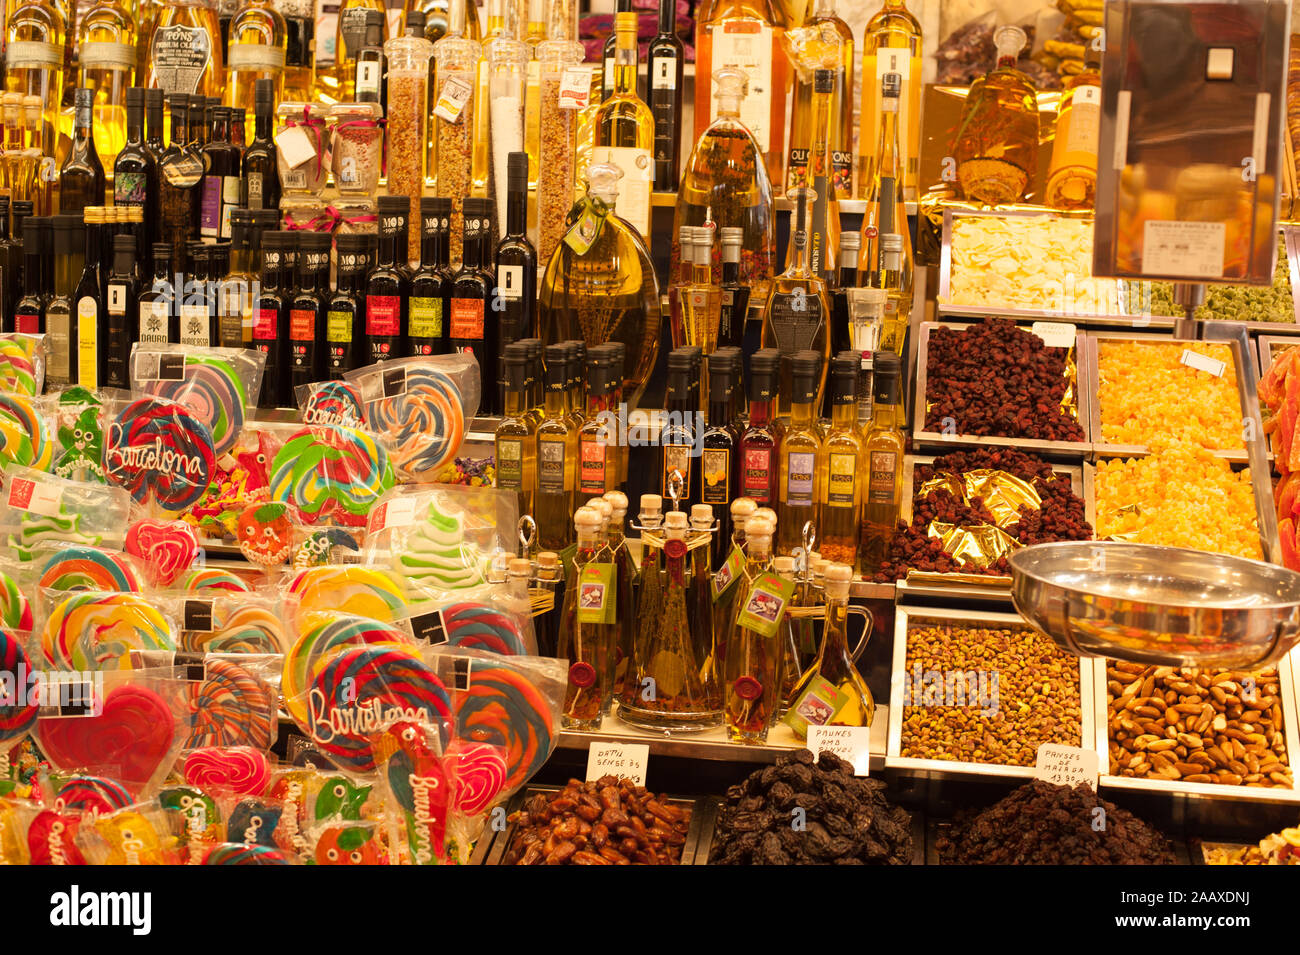 Market in Barcelona Stock Photo